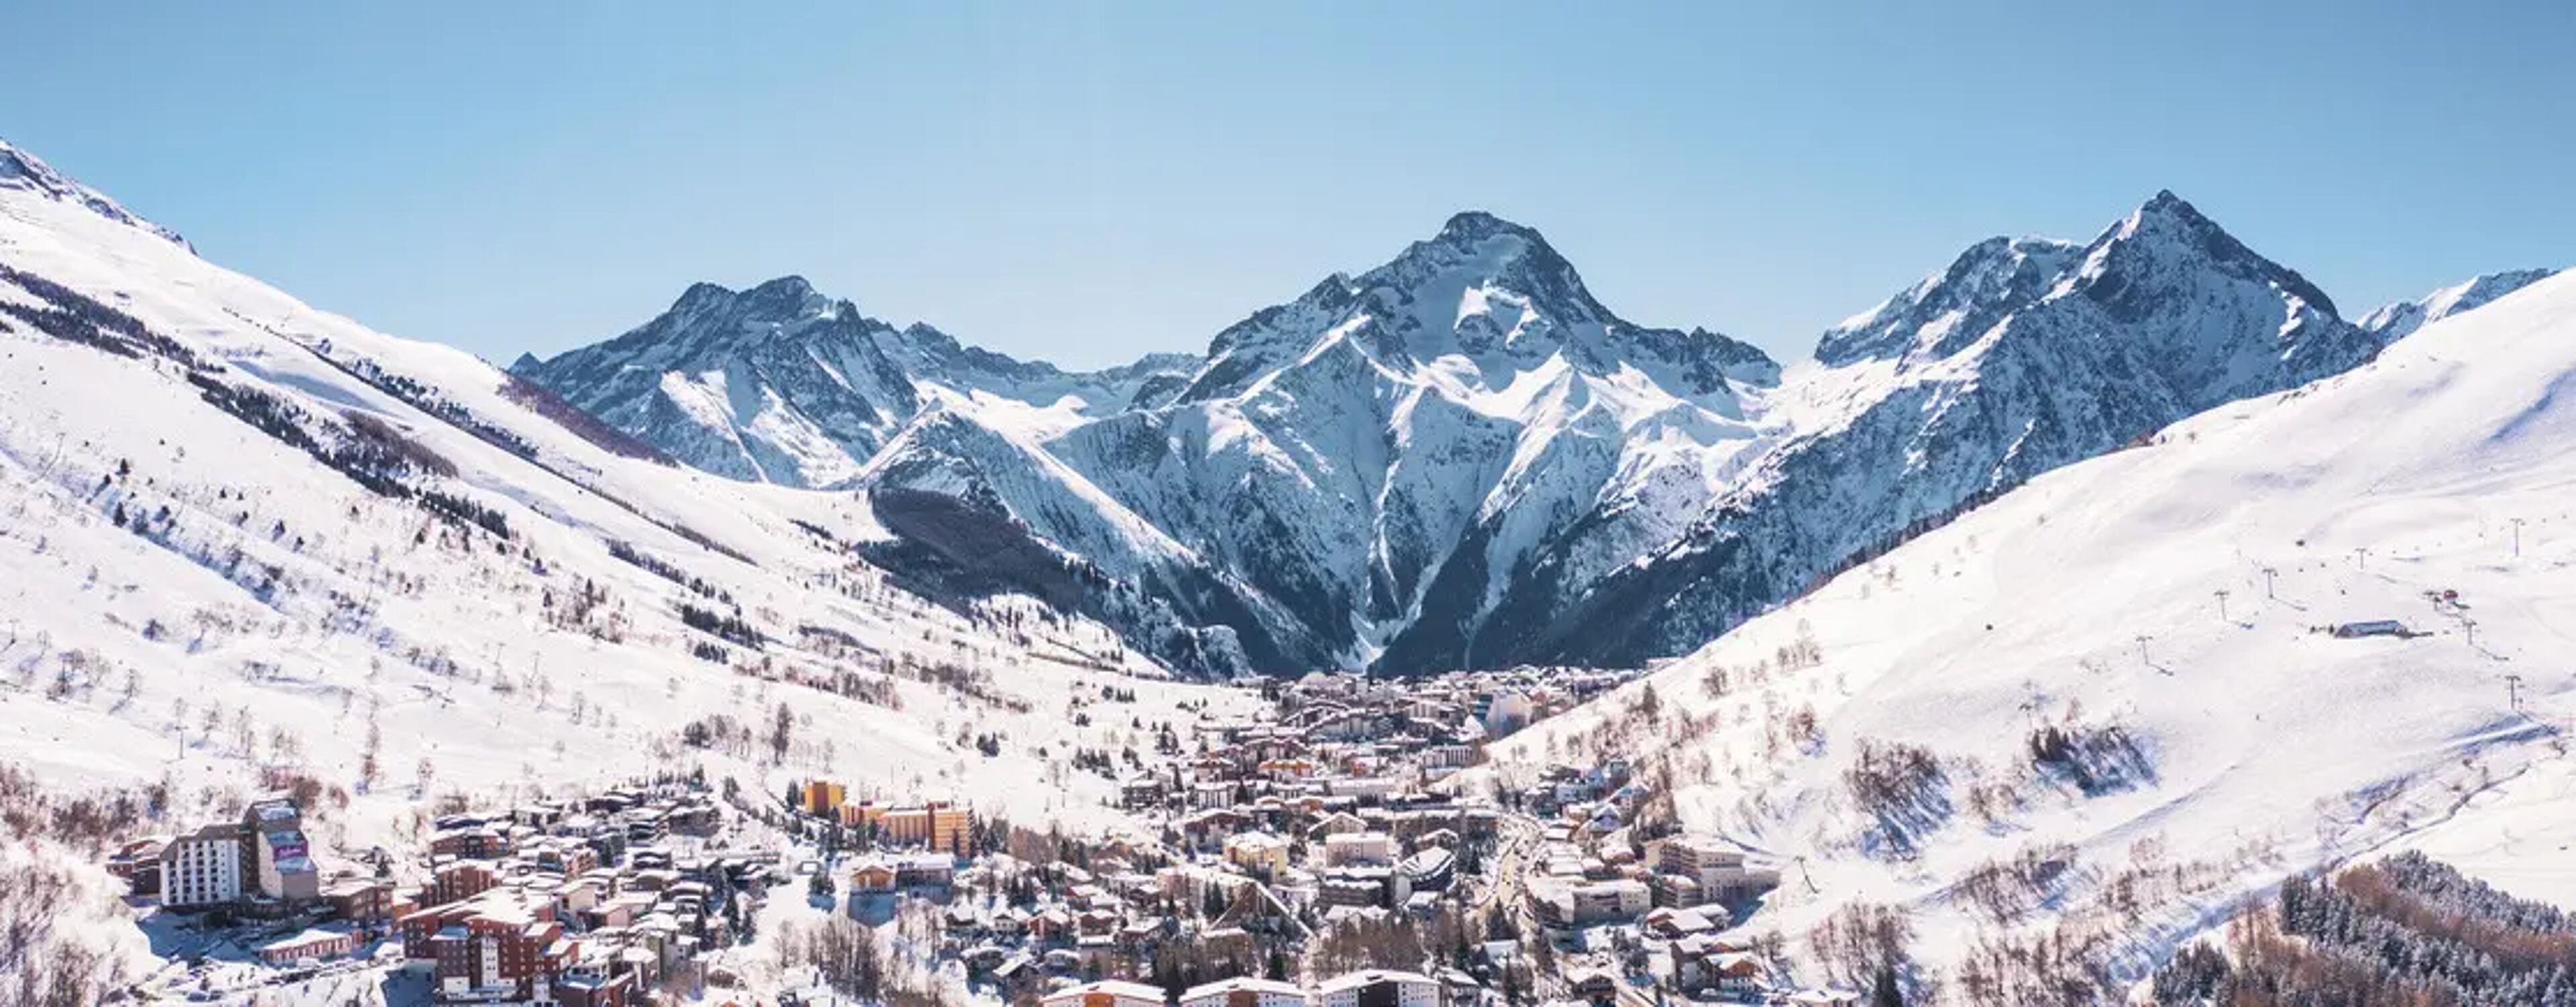 2 Alpes ski resort